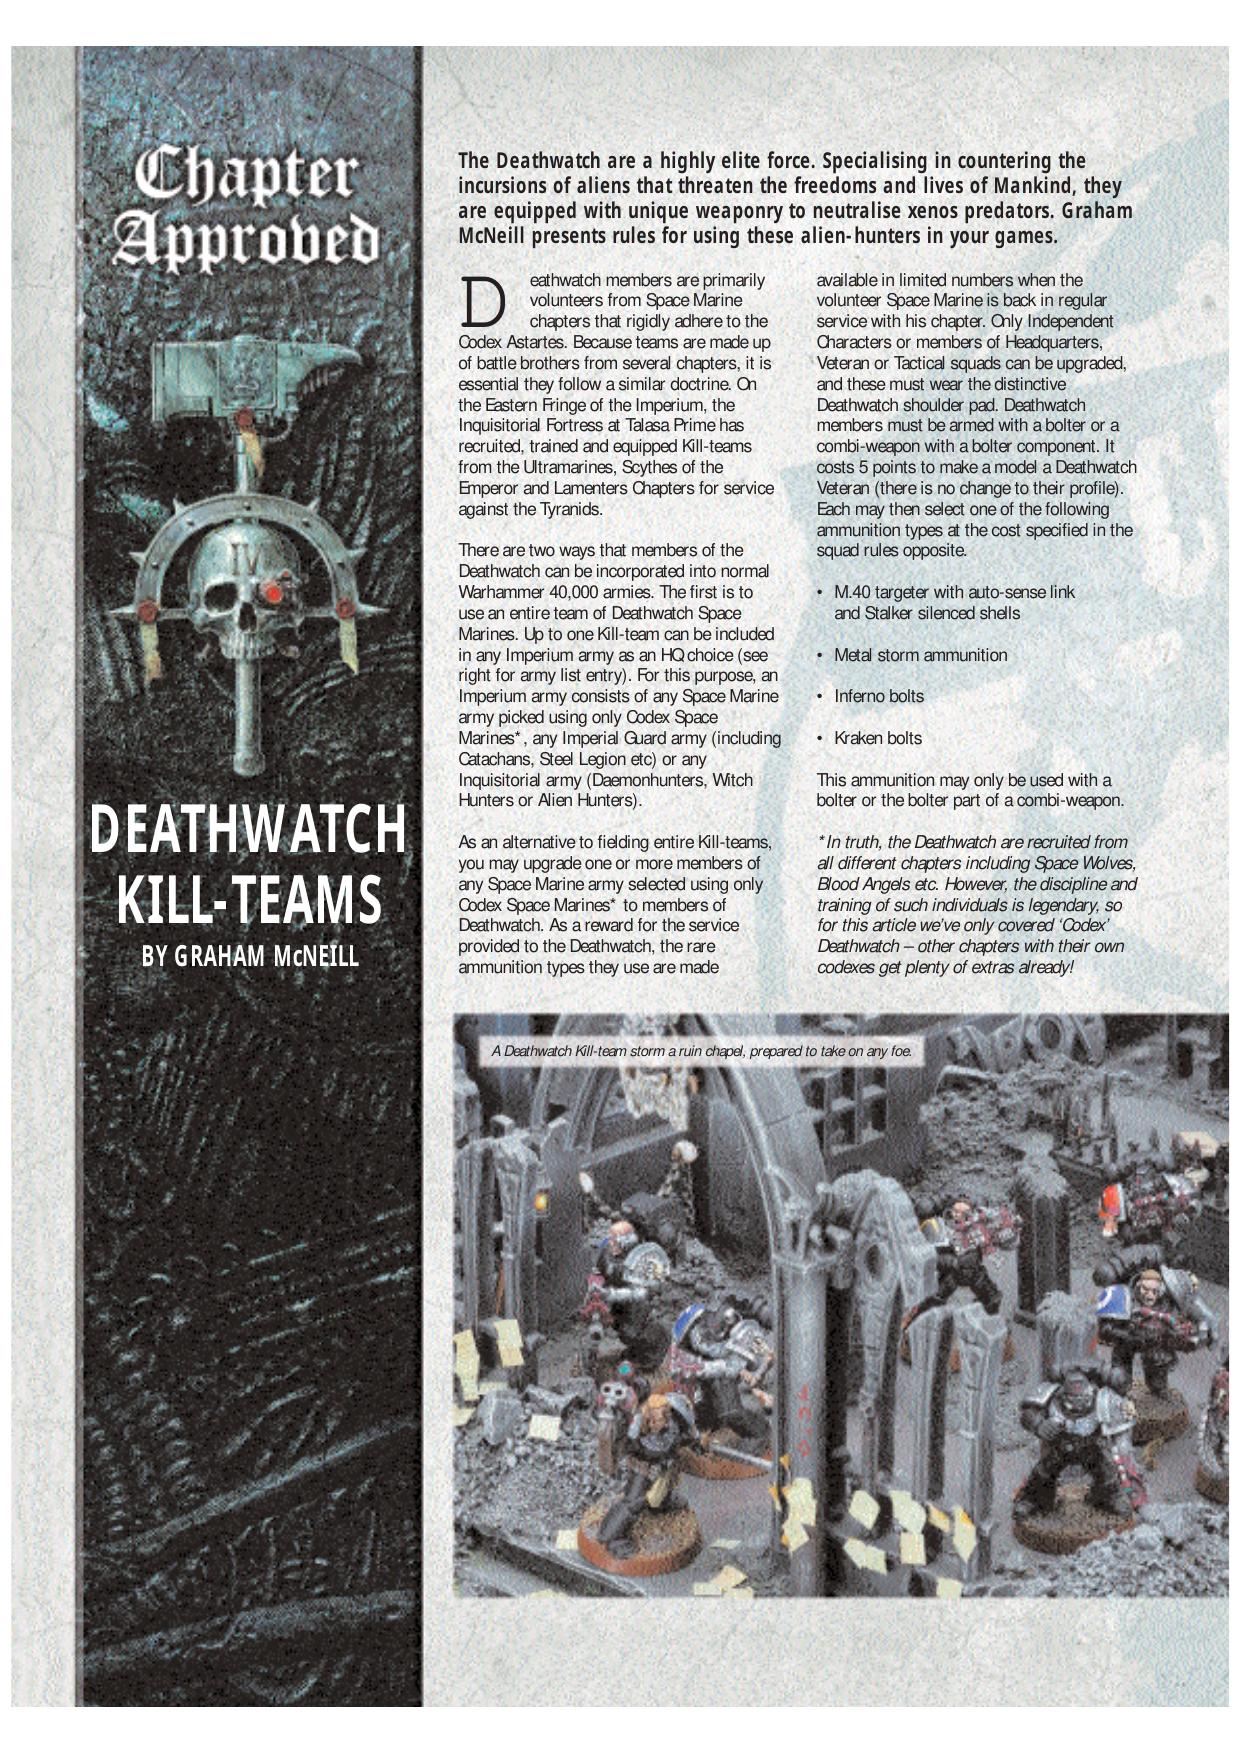 Deathwatch Kill-Teams